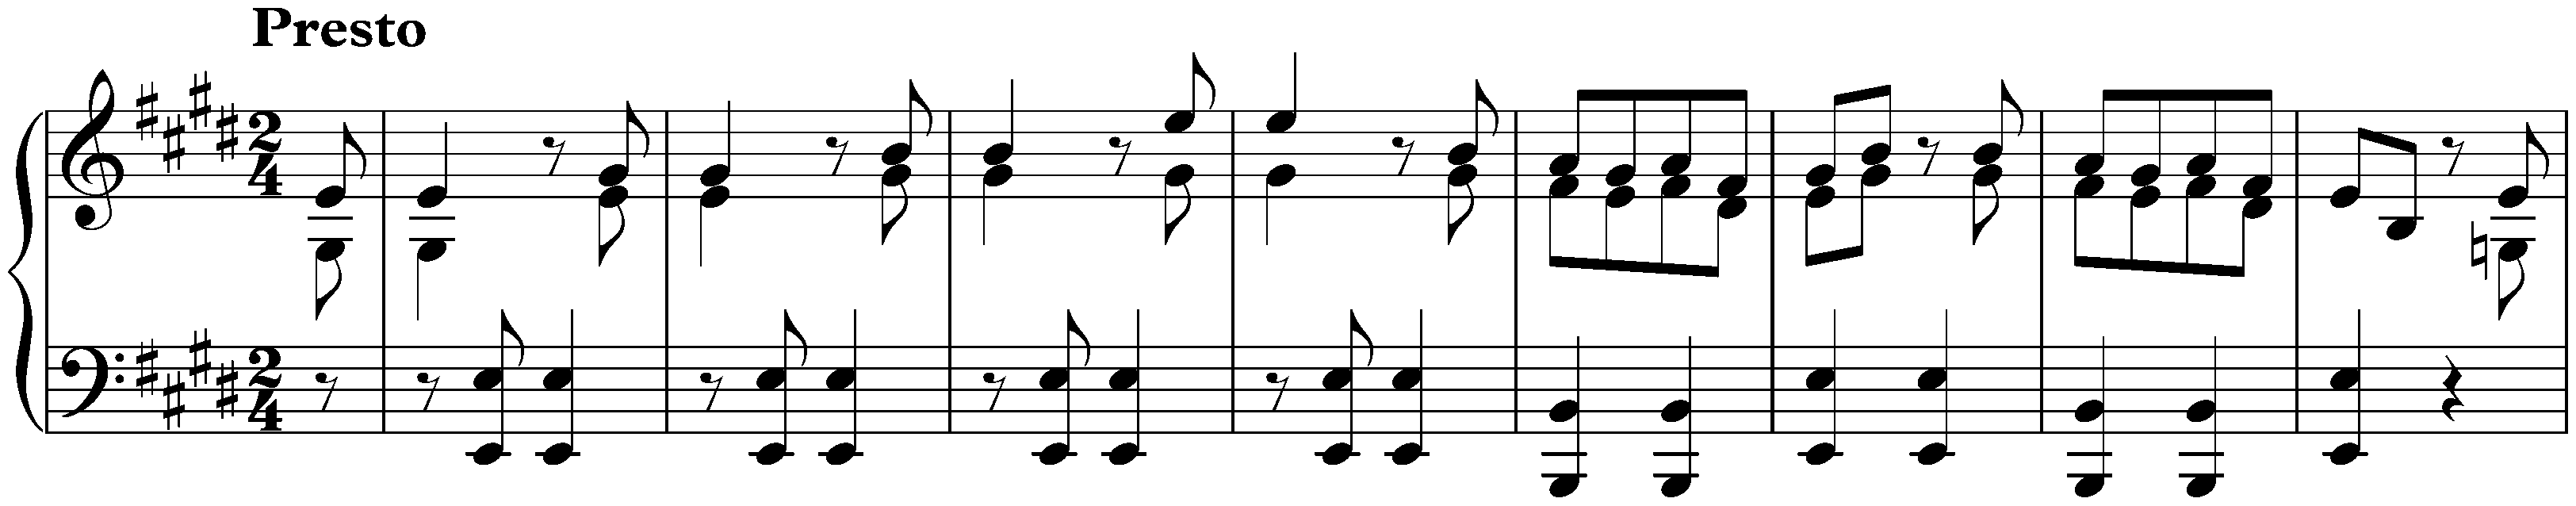 Sonata in E major, Hob. XVI:13; 3. Finale: Presto